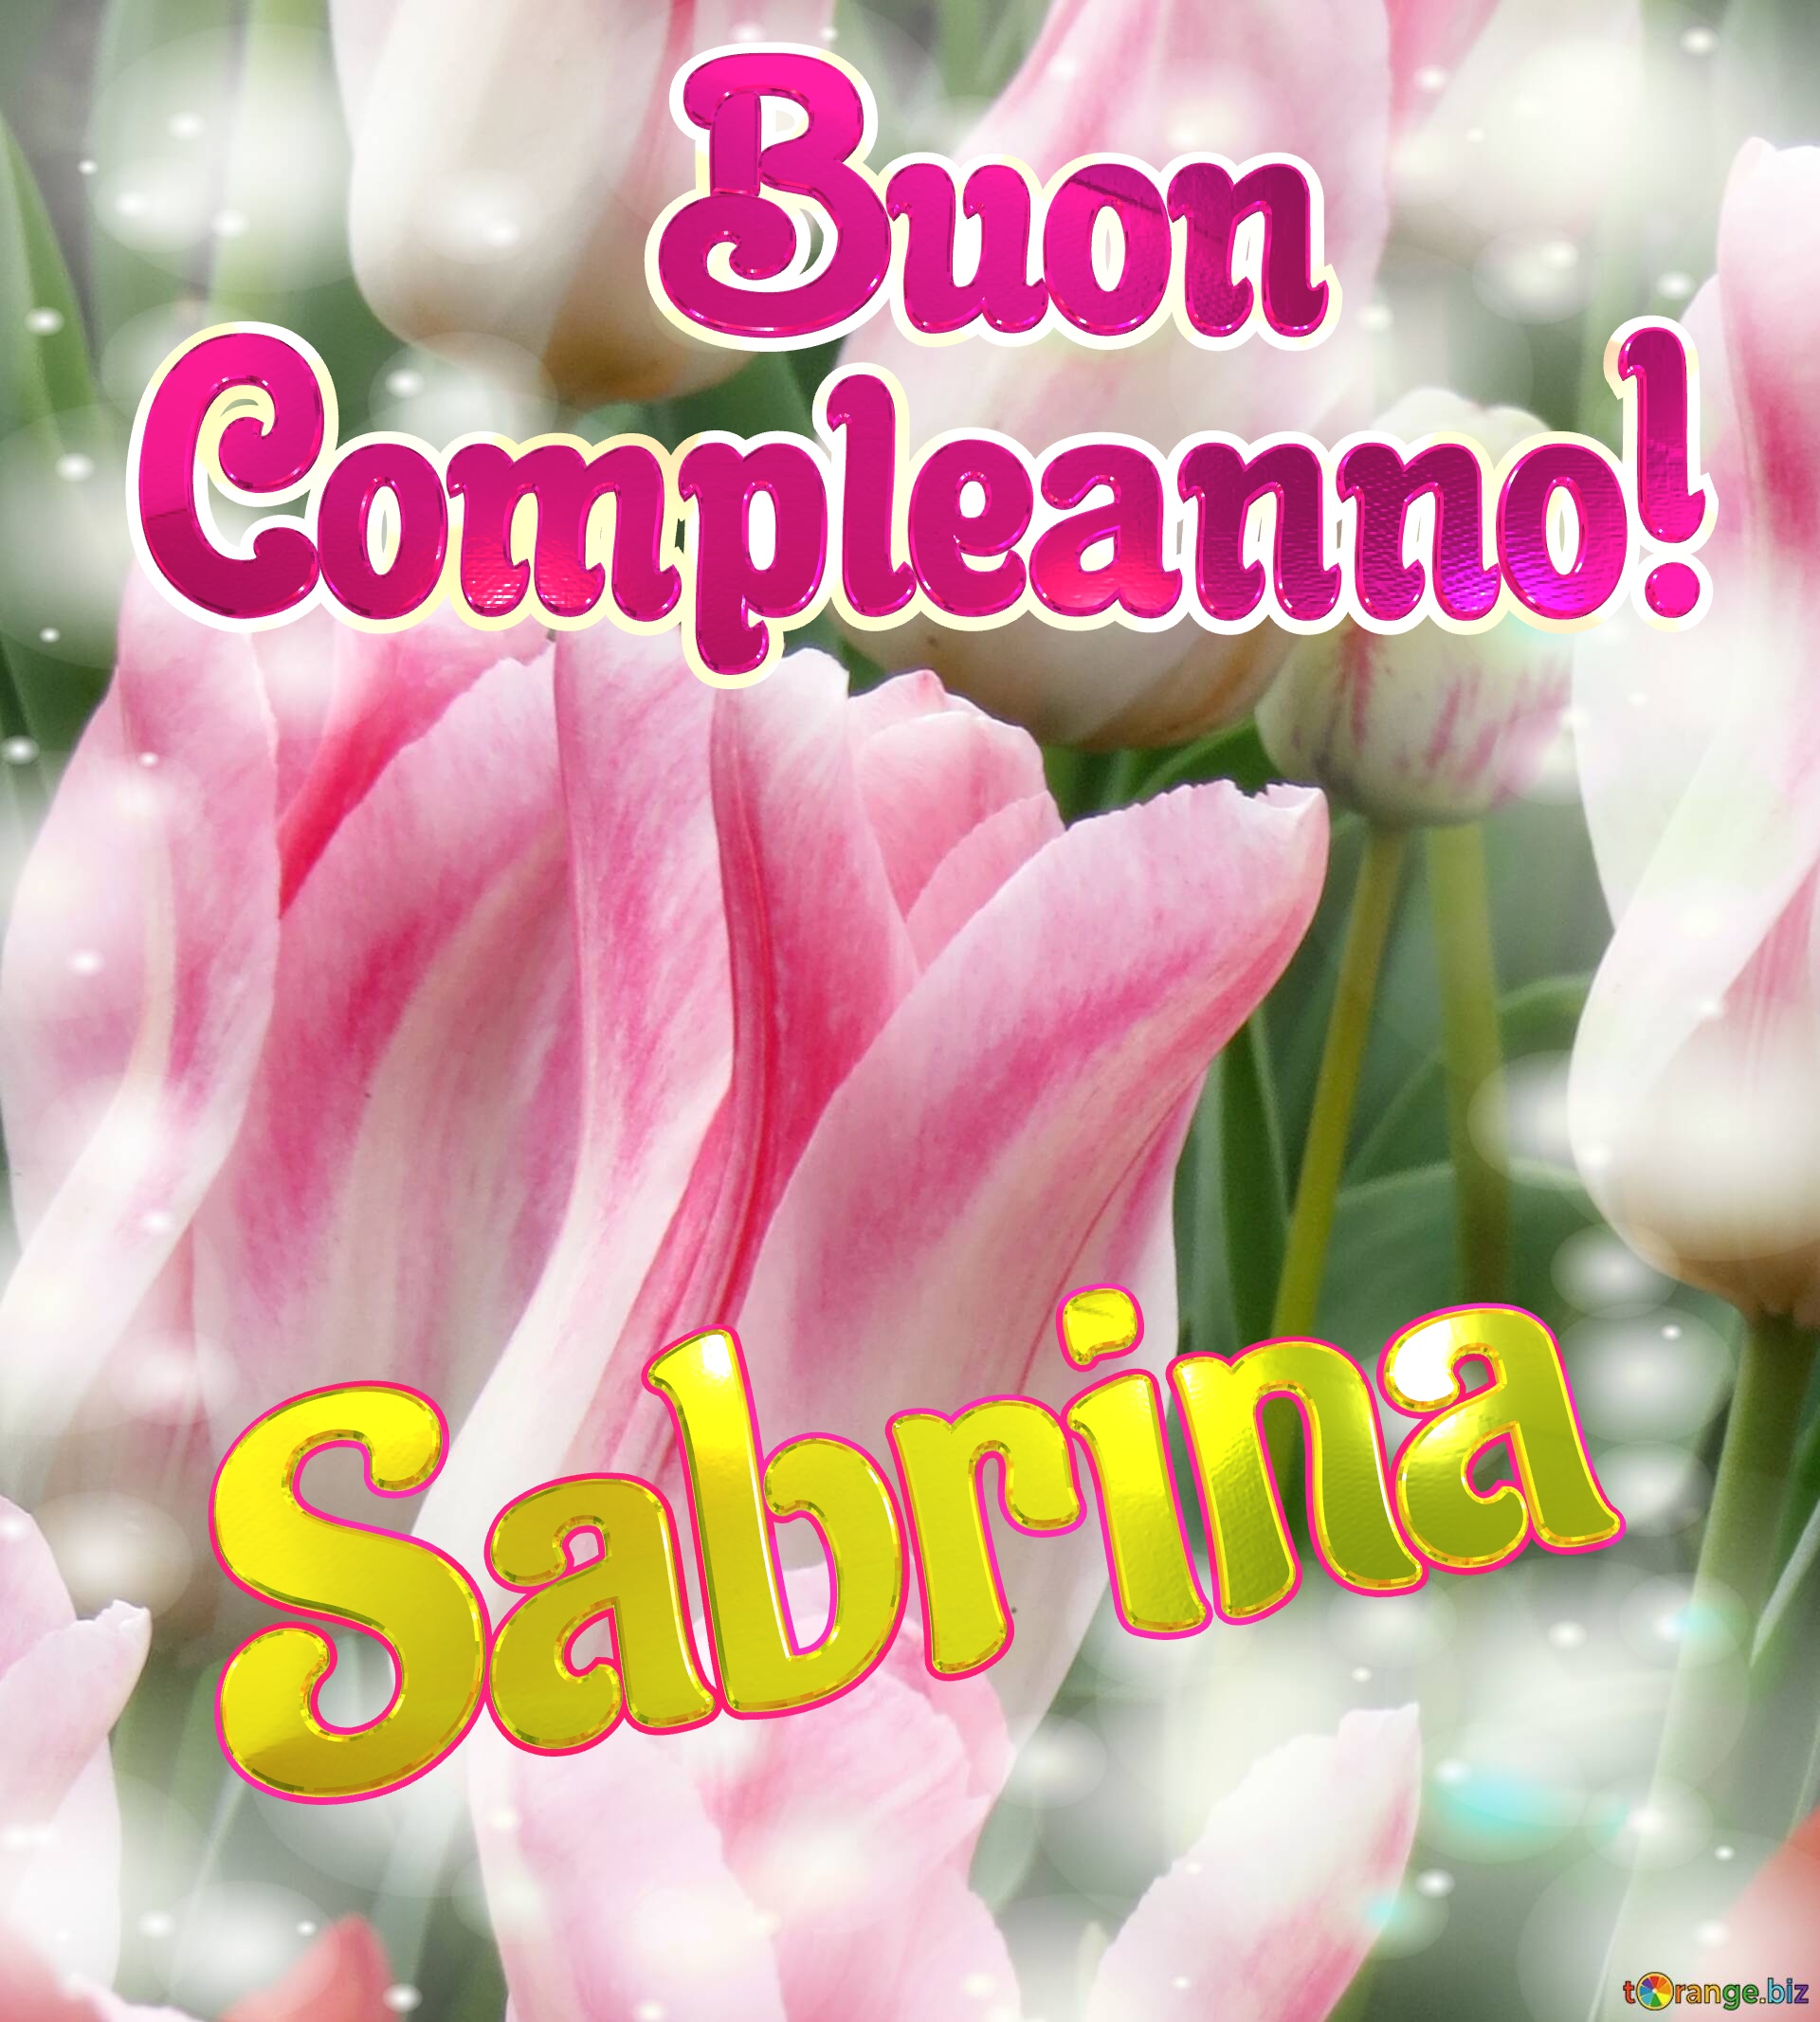       Buon  Compleanno! Sabrina  La bellezza dei tulipani è un richiamo alla semplicità della vita, goditela al massimo. №0